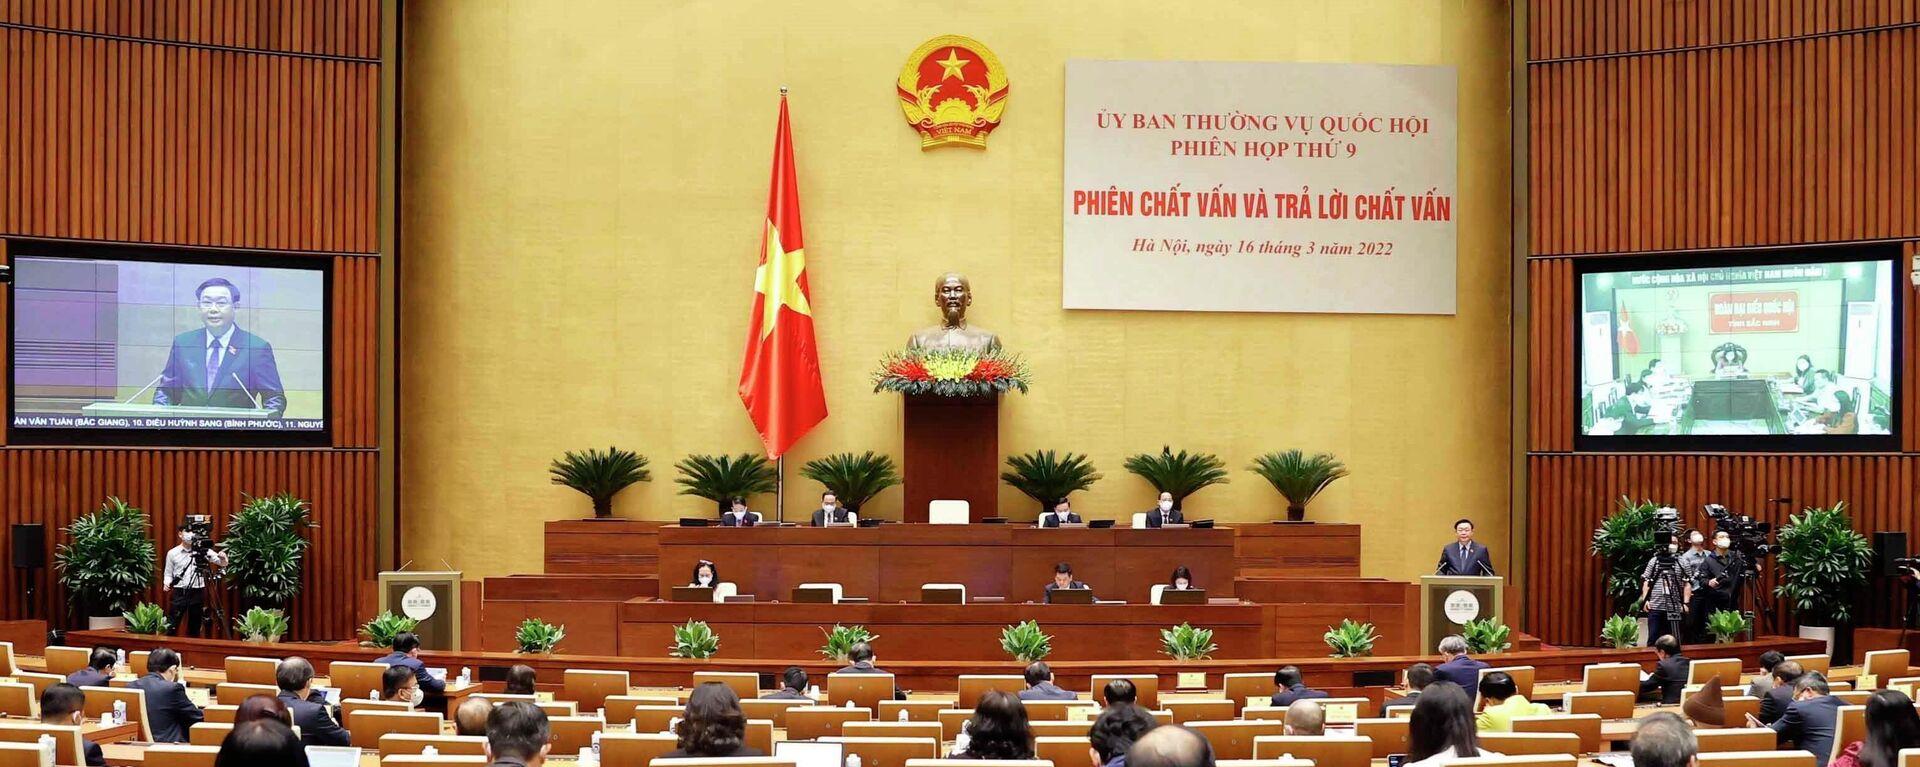 Phiên chất vấn và trả lời chất vấn các thành viên Chính phủ tại Phiên họp thứ 9 của Ủy ban Thường vụ Quốc hội khóa XV - Sputnik Việt Nam, 1920, 16.03.2022